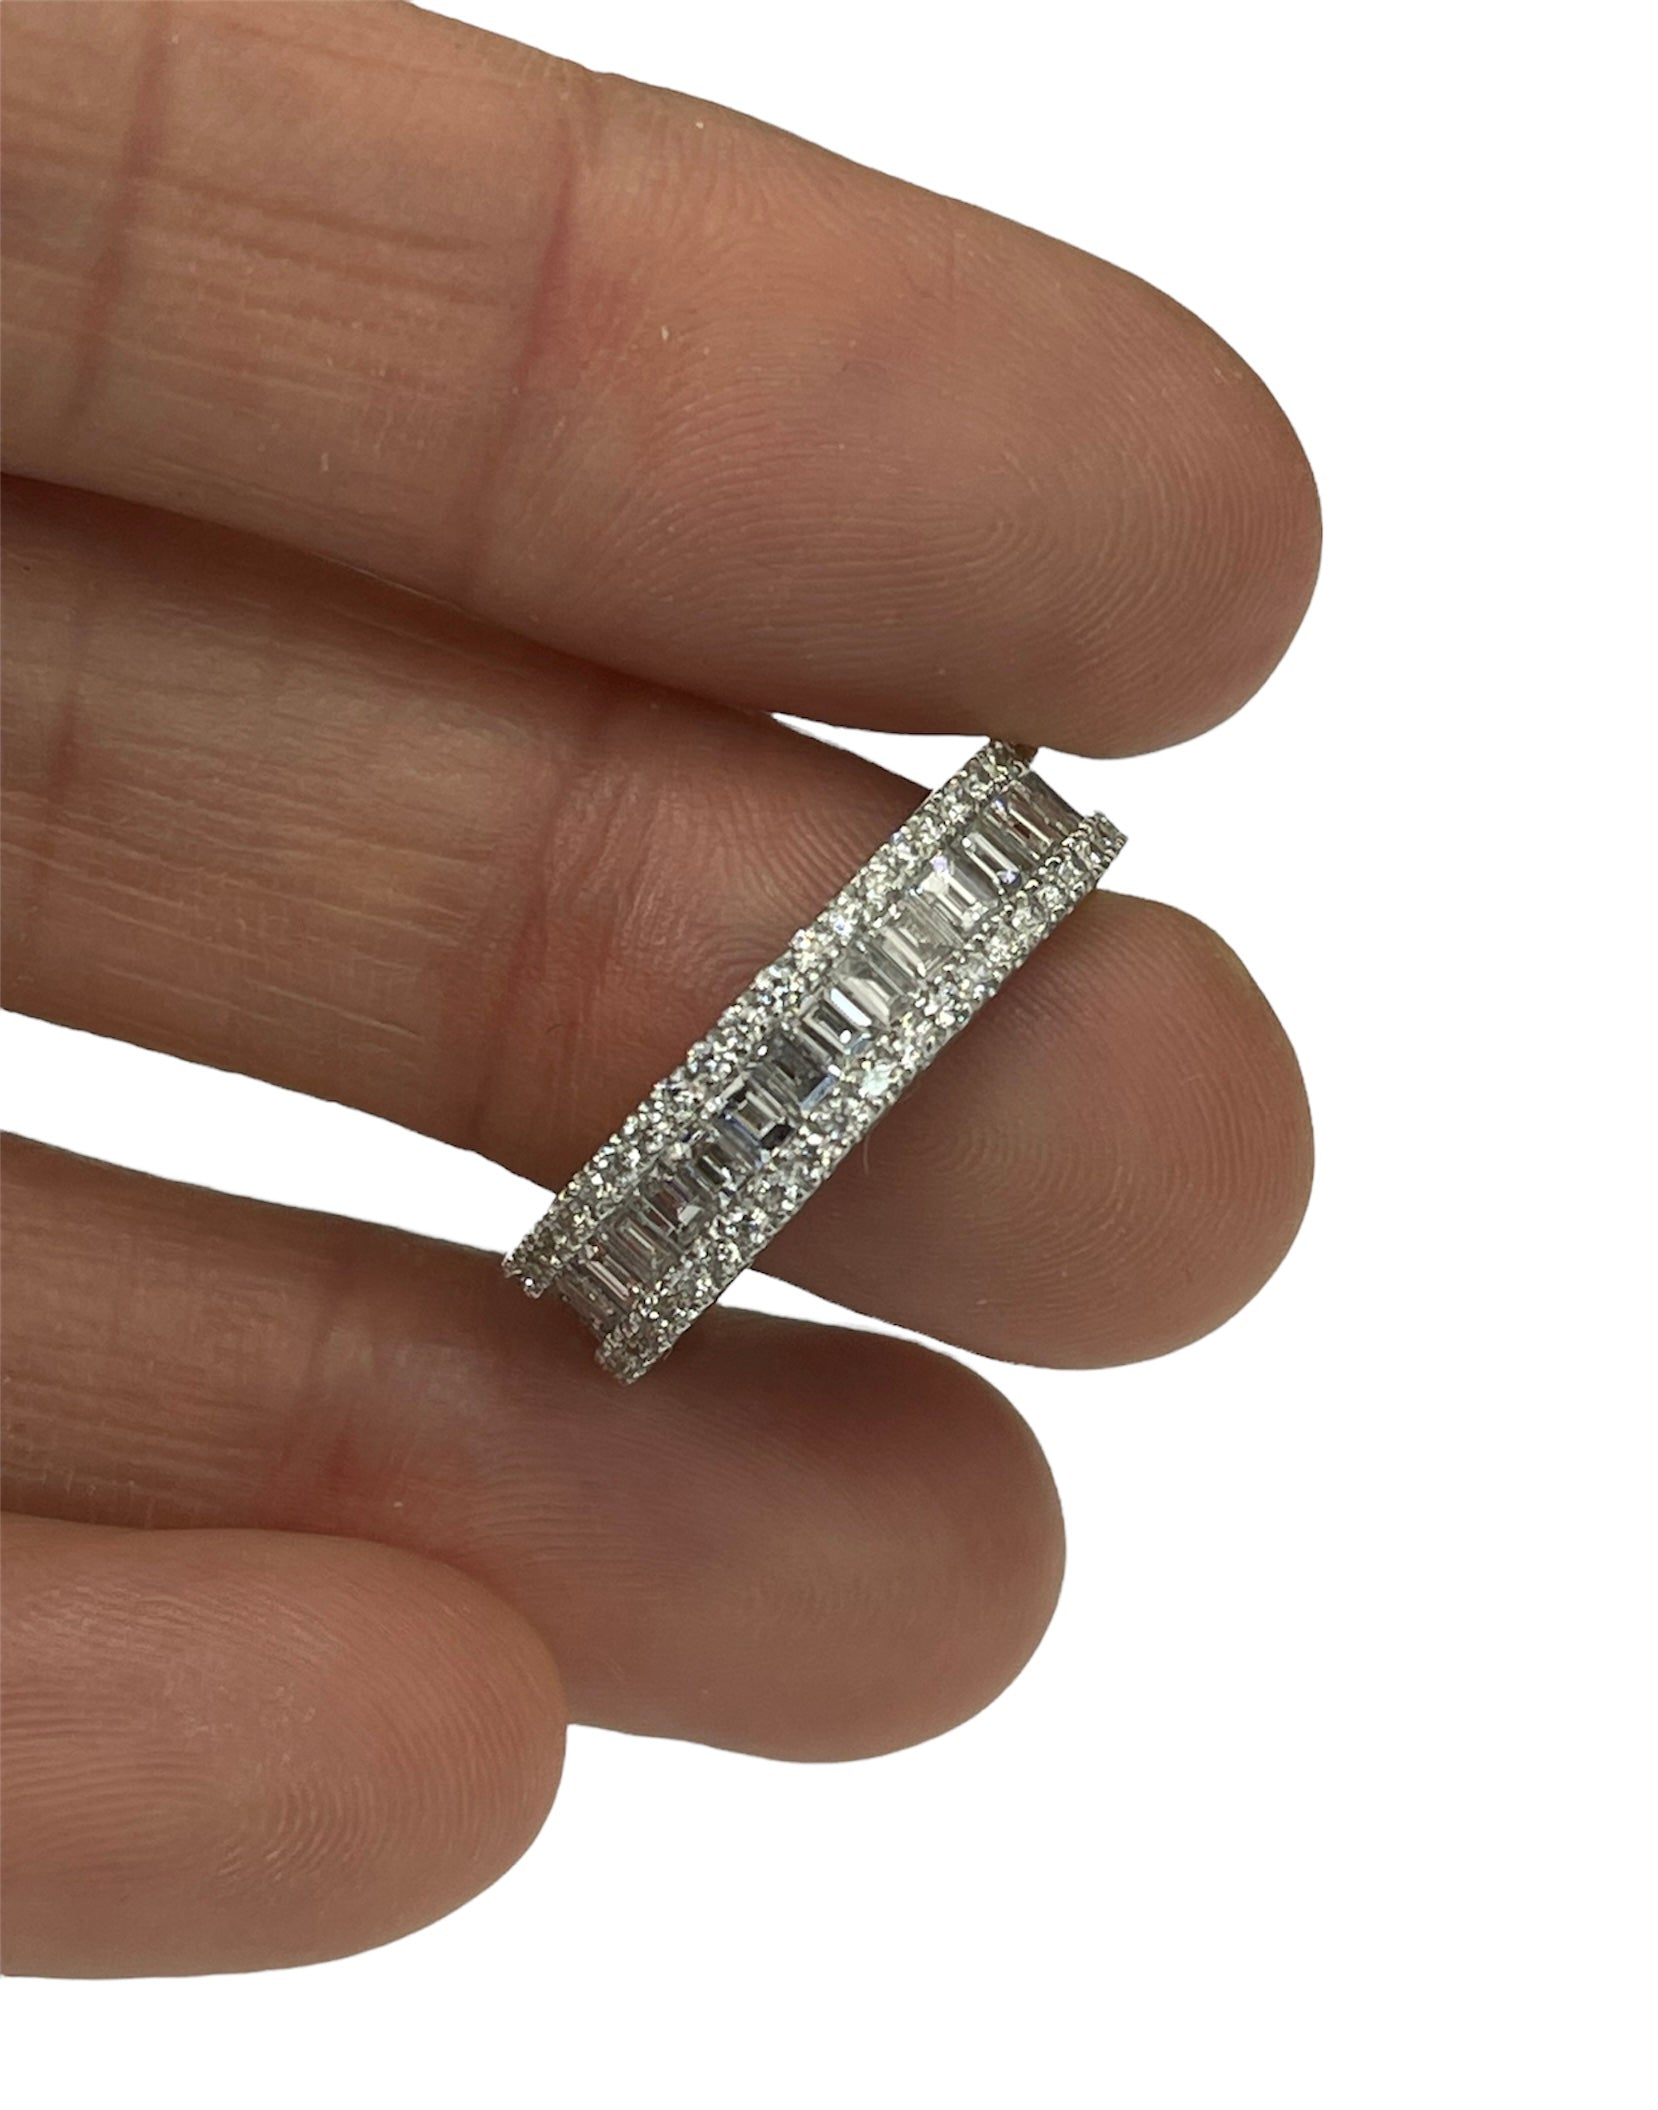 Baguette Eternity Diamond Ring White Gold 18kt Size 6.5